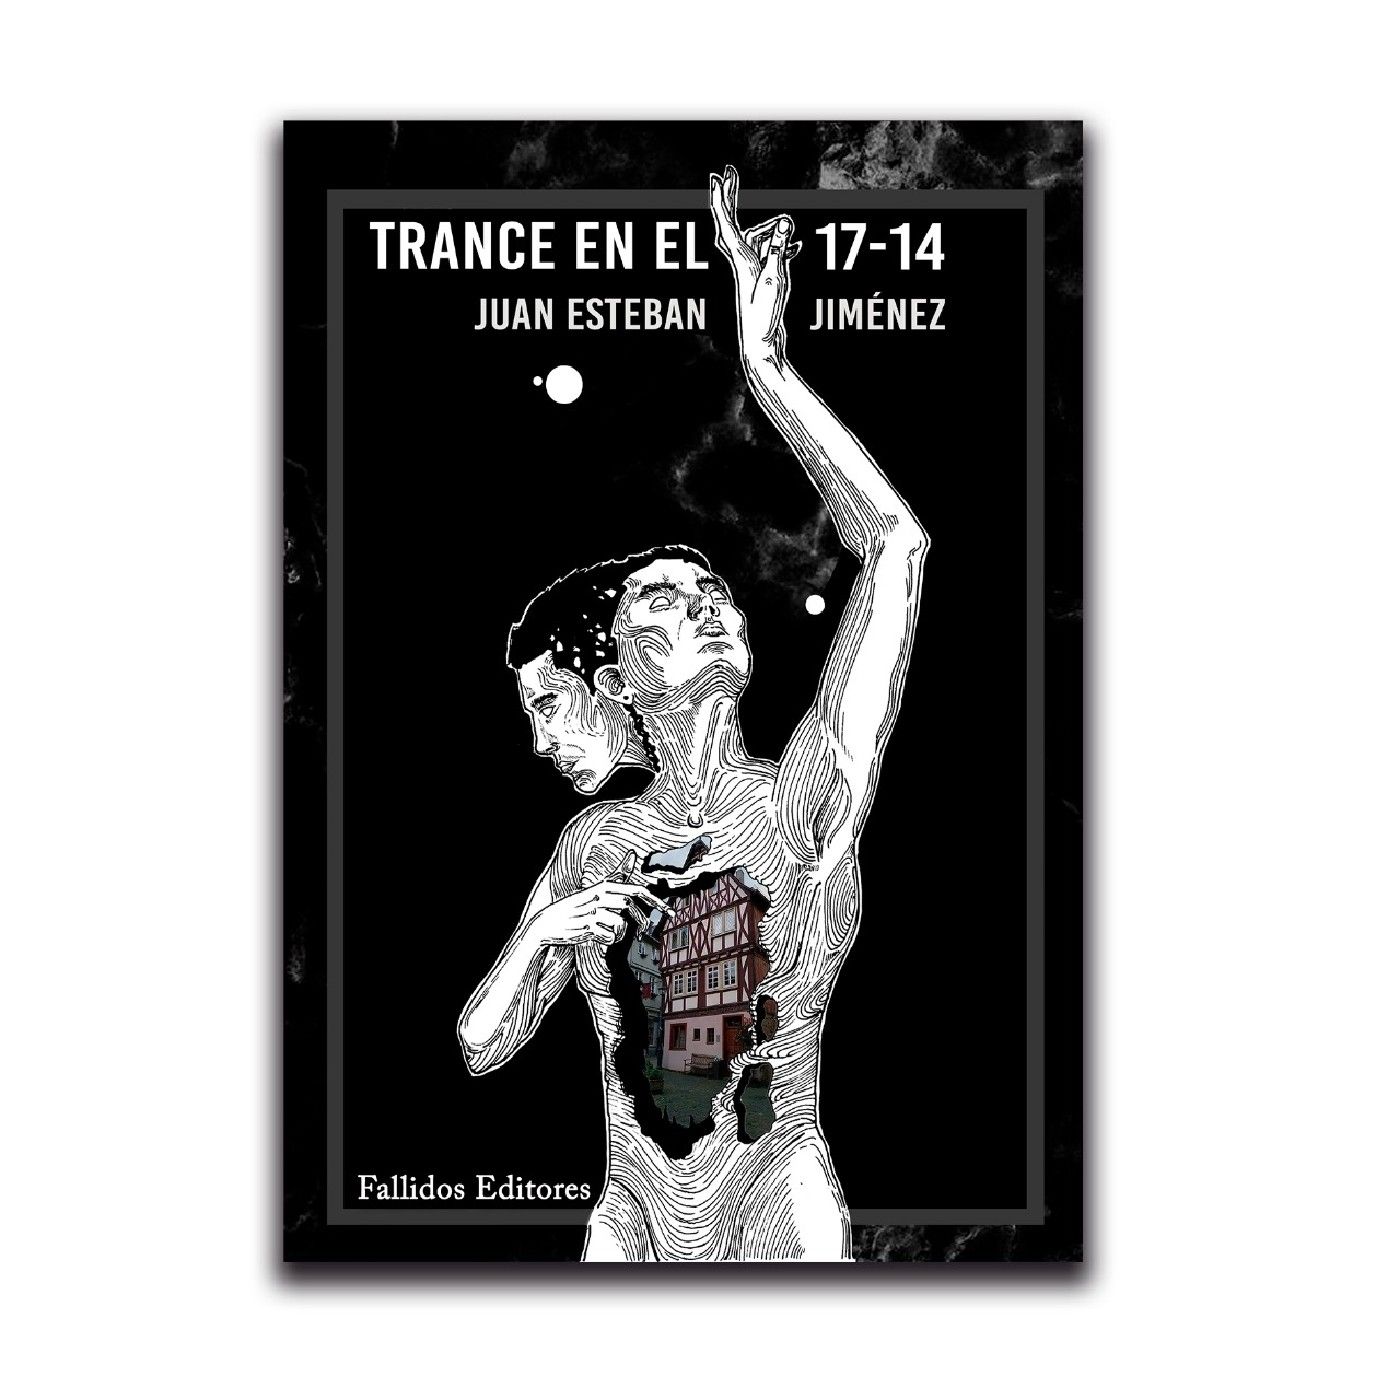 Trance en el 17-14 Juan Esteban Jiménez